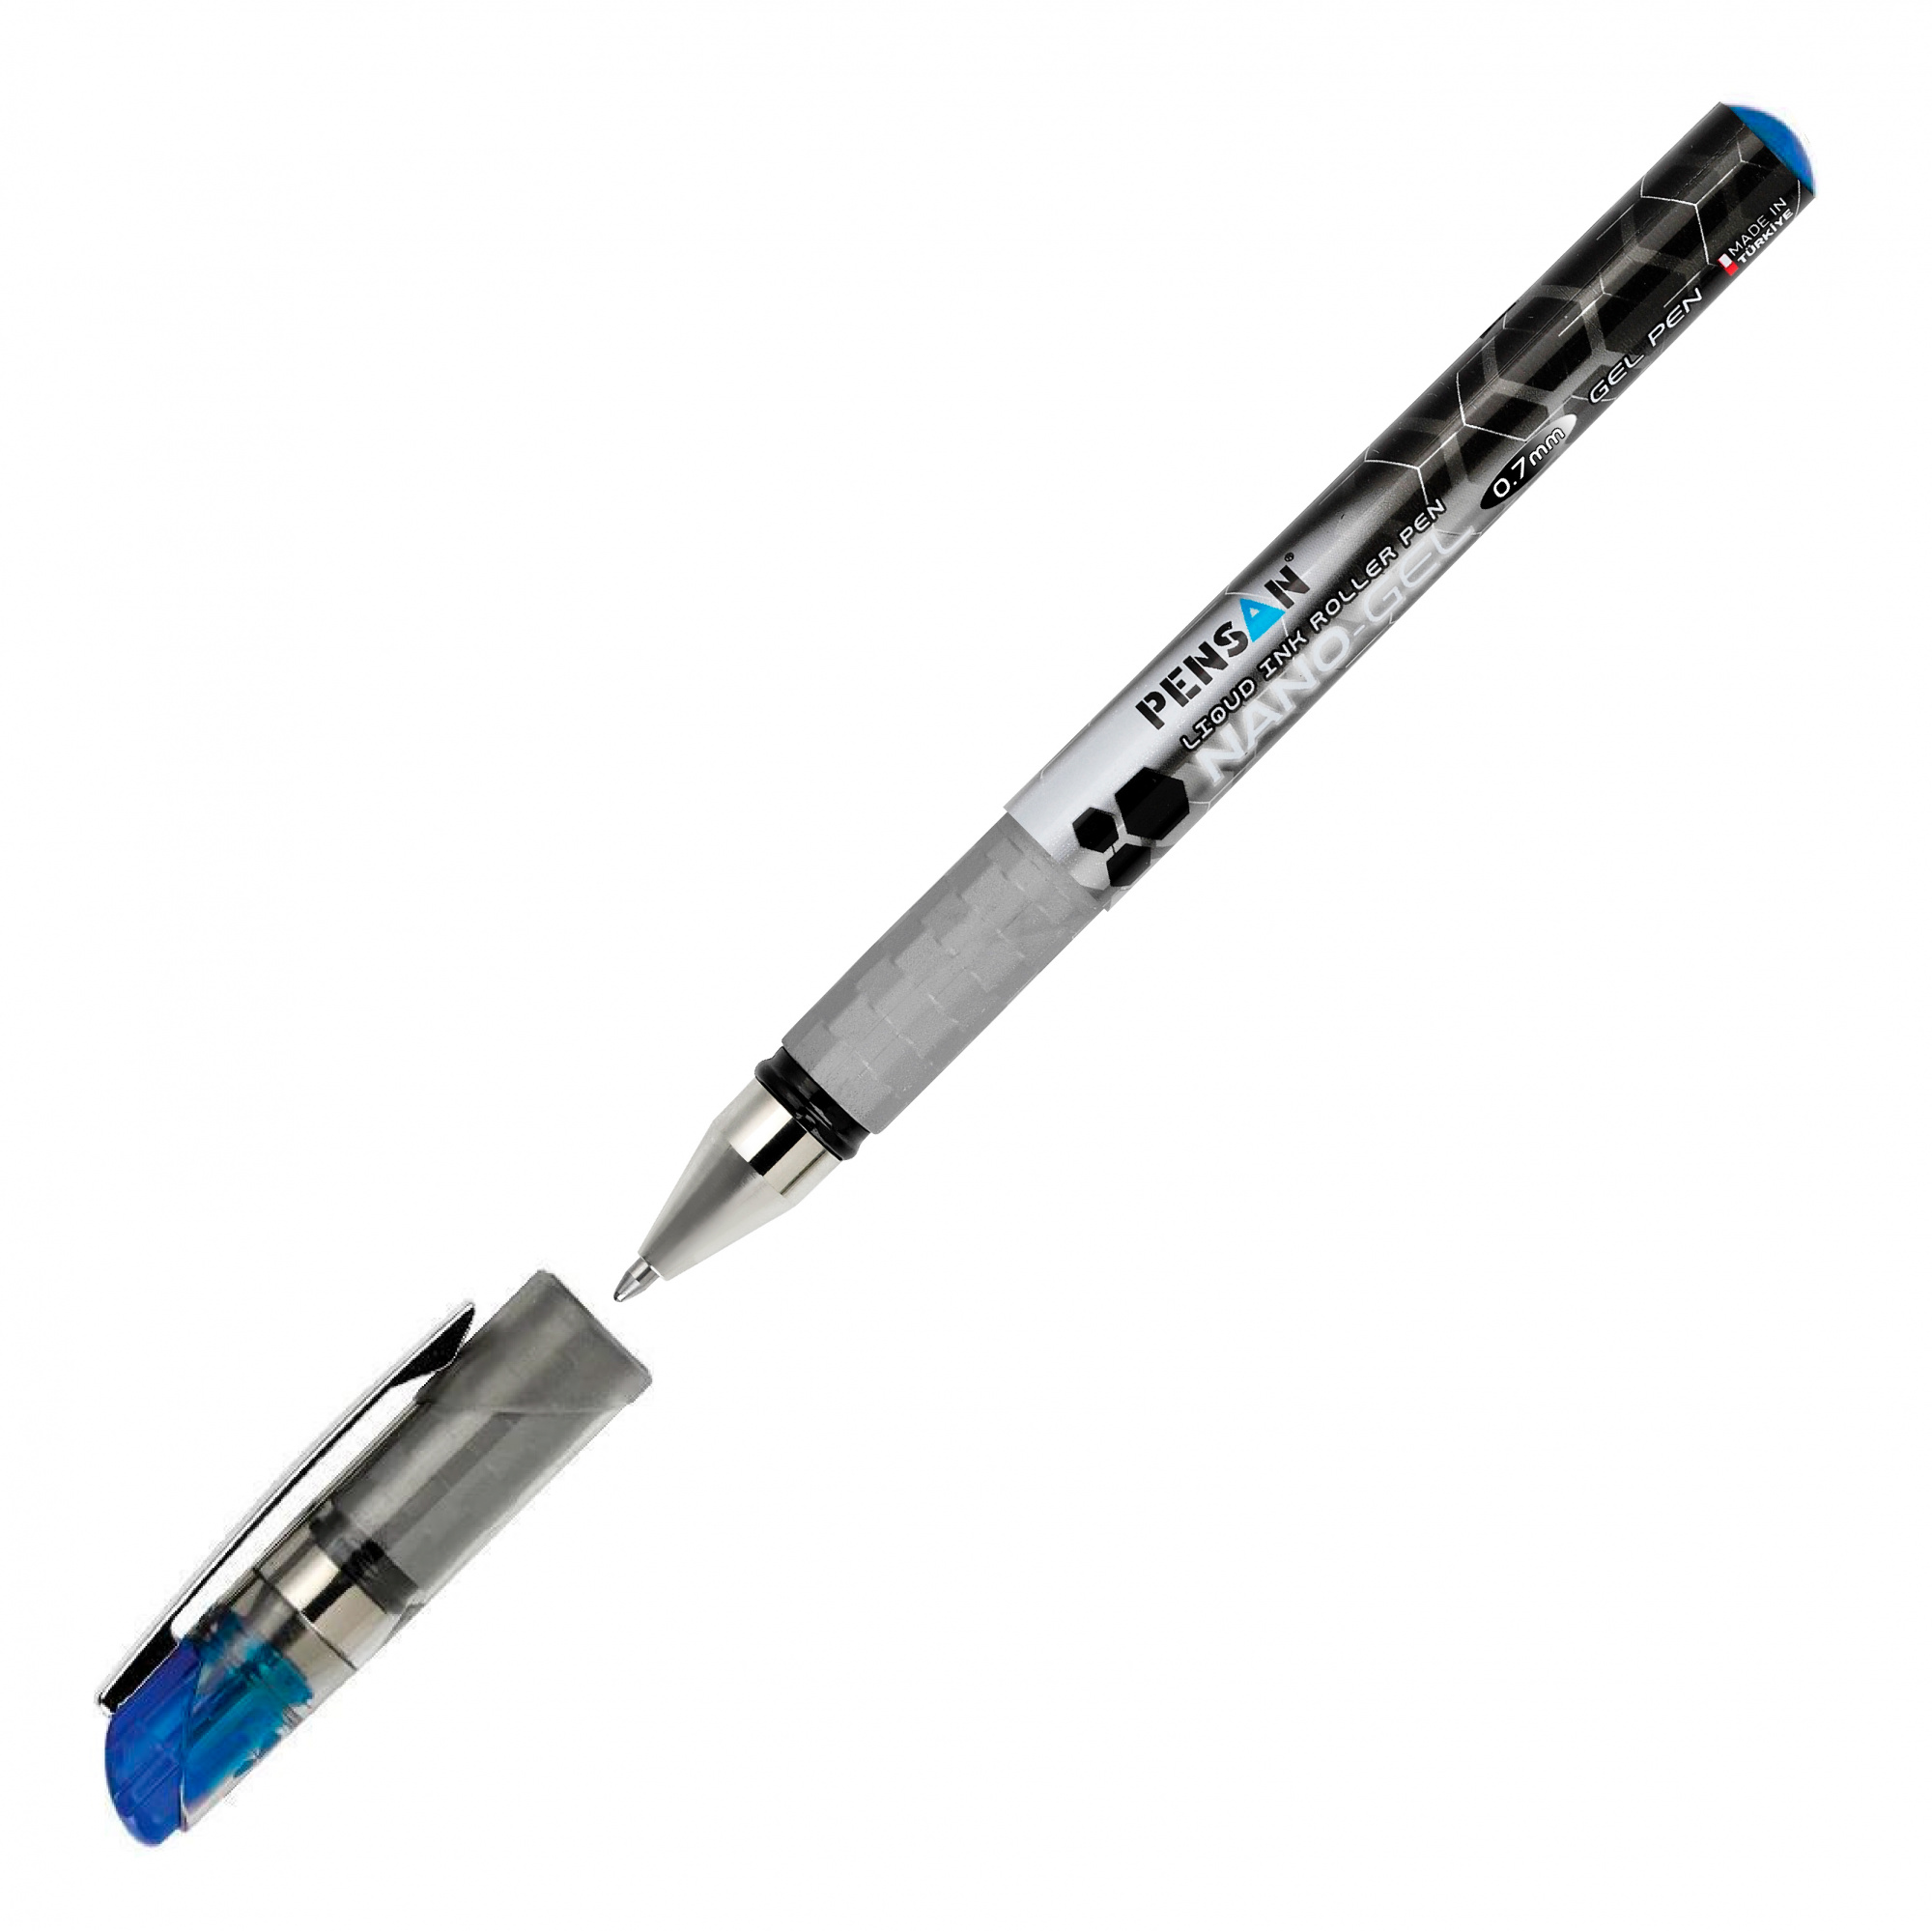 Ручка гелев. Pensan Nano Gel (6020/12BLUE) серебристый d=0.7мм син. черн. игловидный пиш. наконечник линия 0.5мм резин. манжета